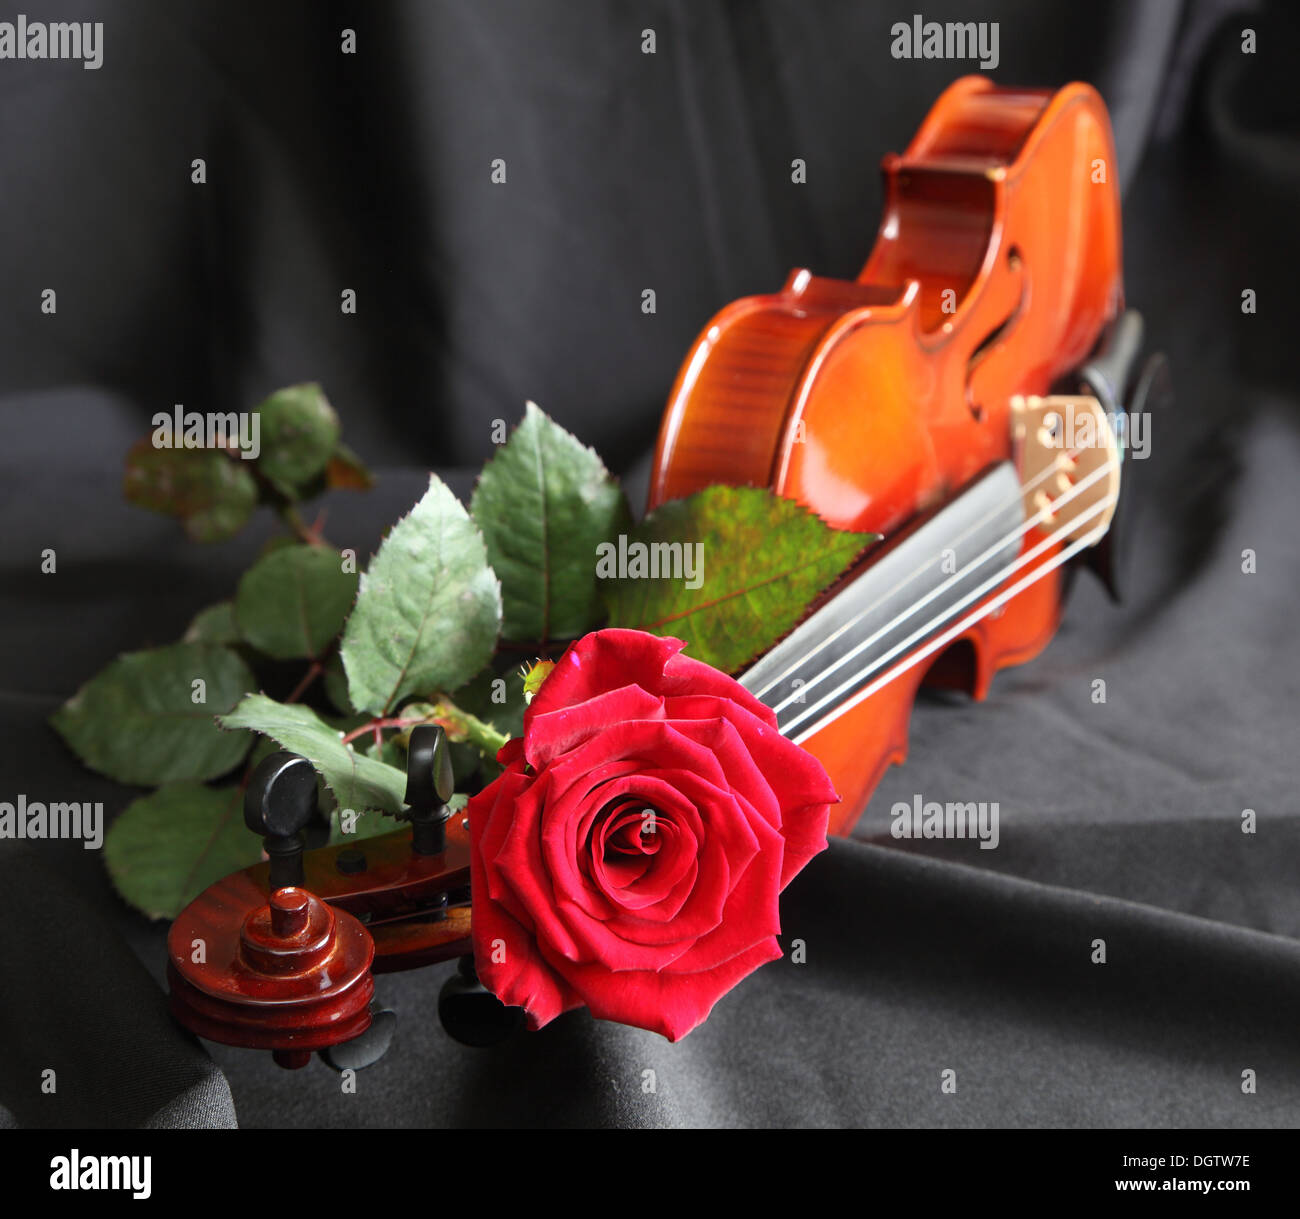 Le violon avec une rose rouge sur fond noir Banque D'Images